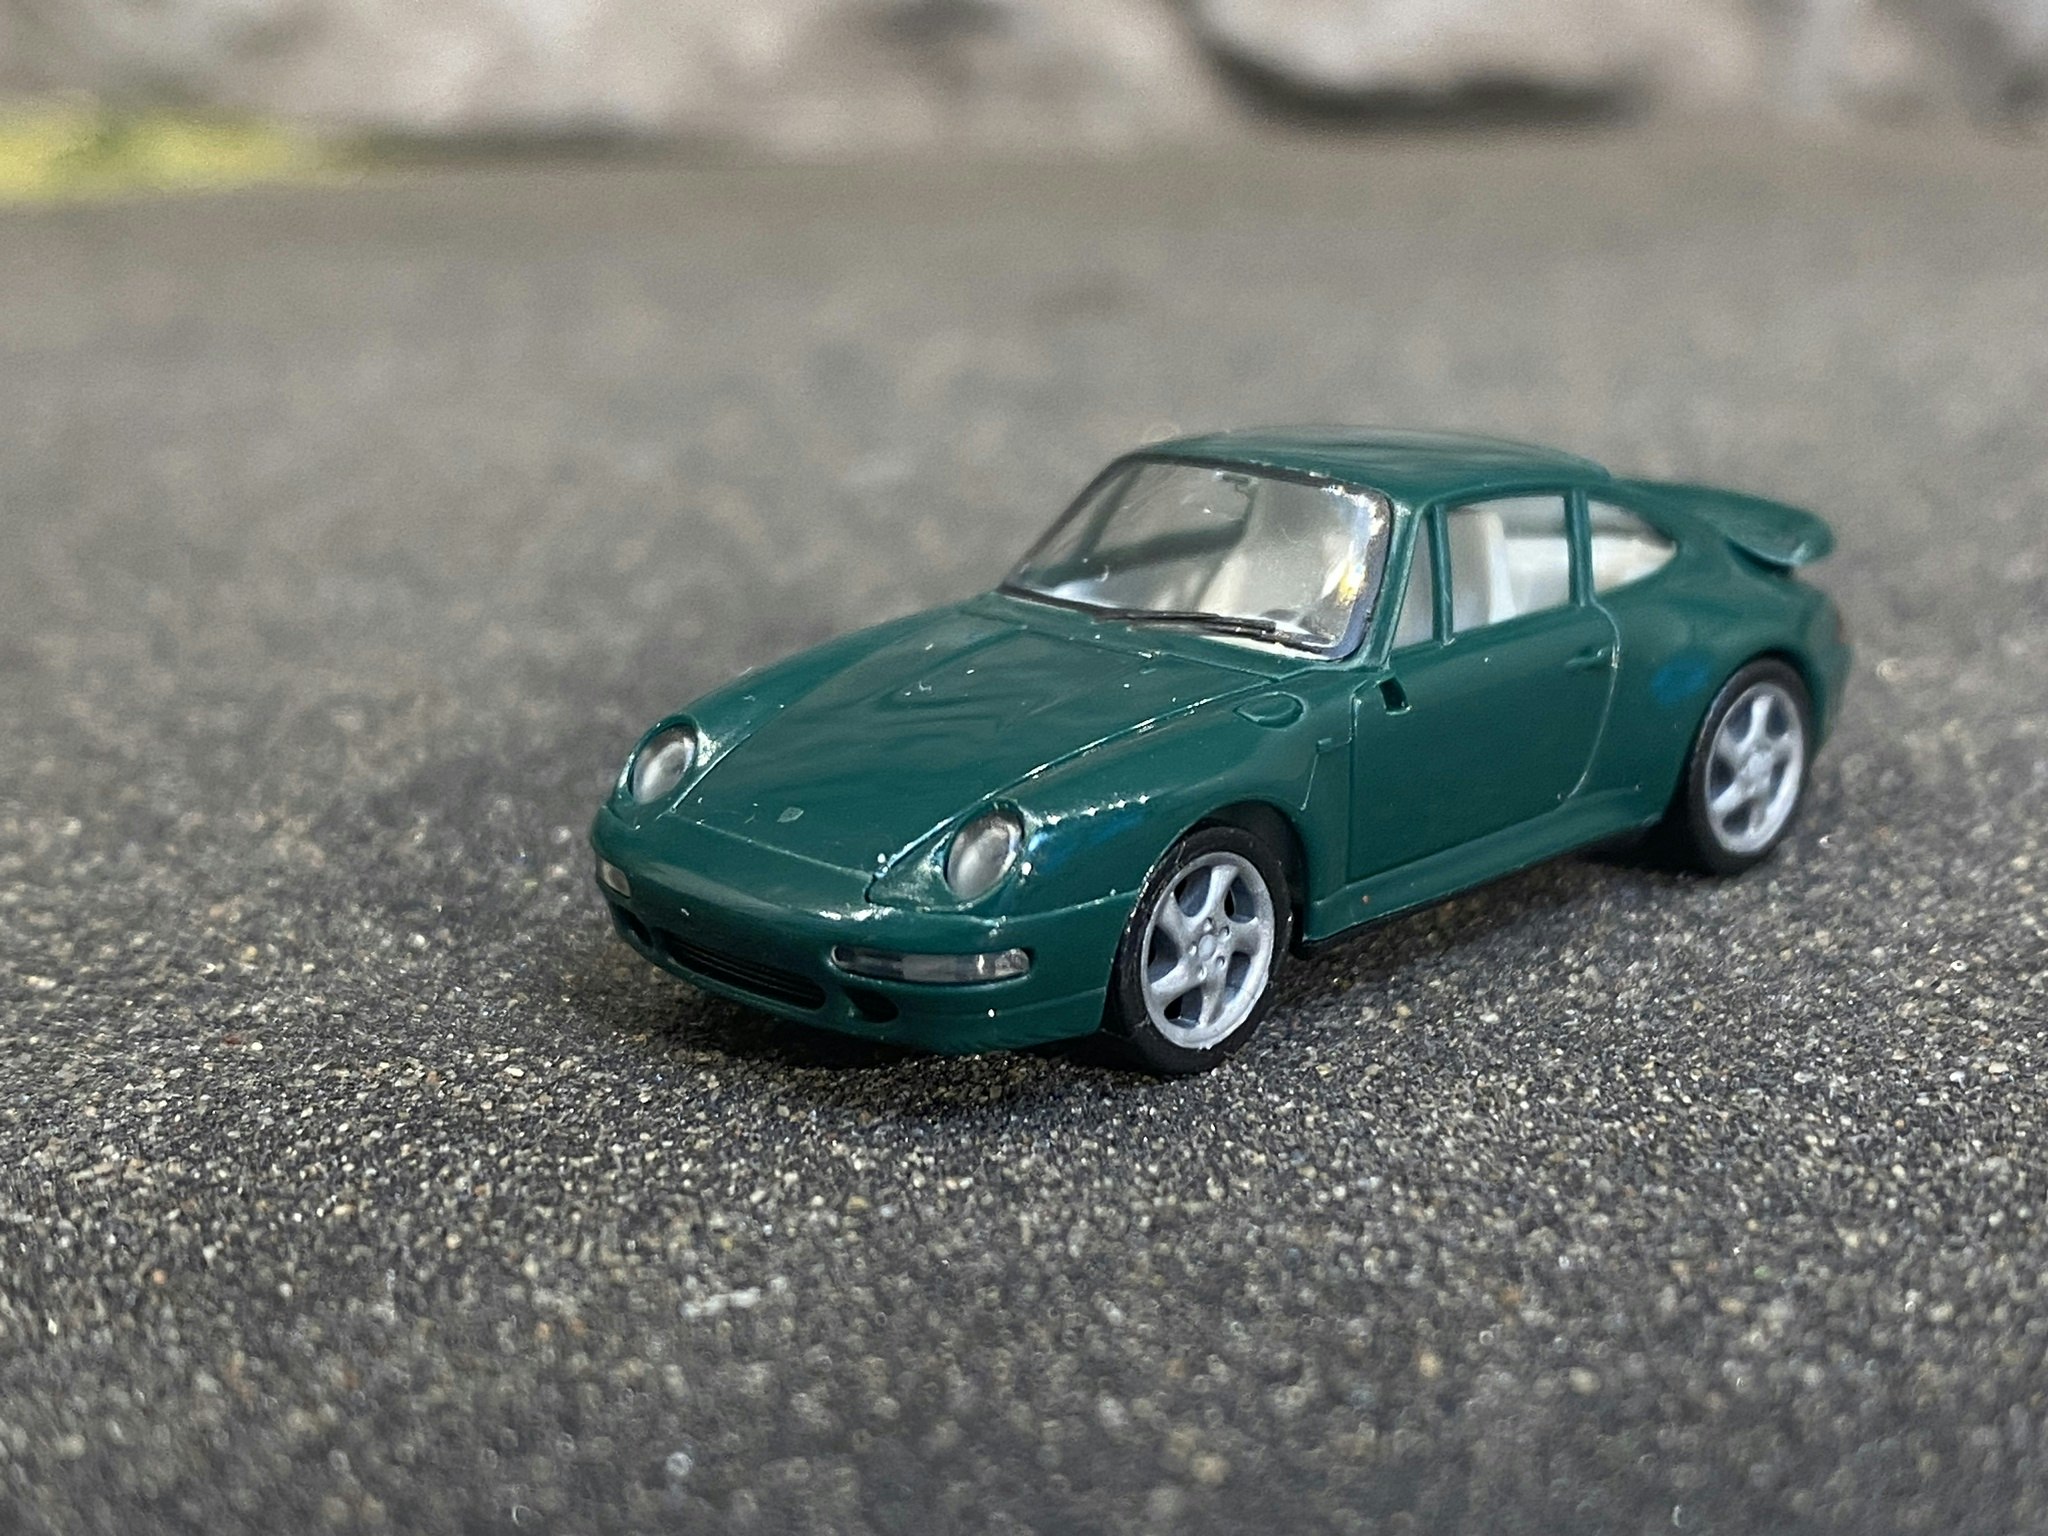 Skala 1/87 - Porsche 911, 95' Grön från Herpa, Skrot?! Obs saknar sidospegel!